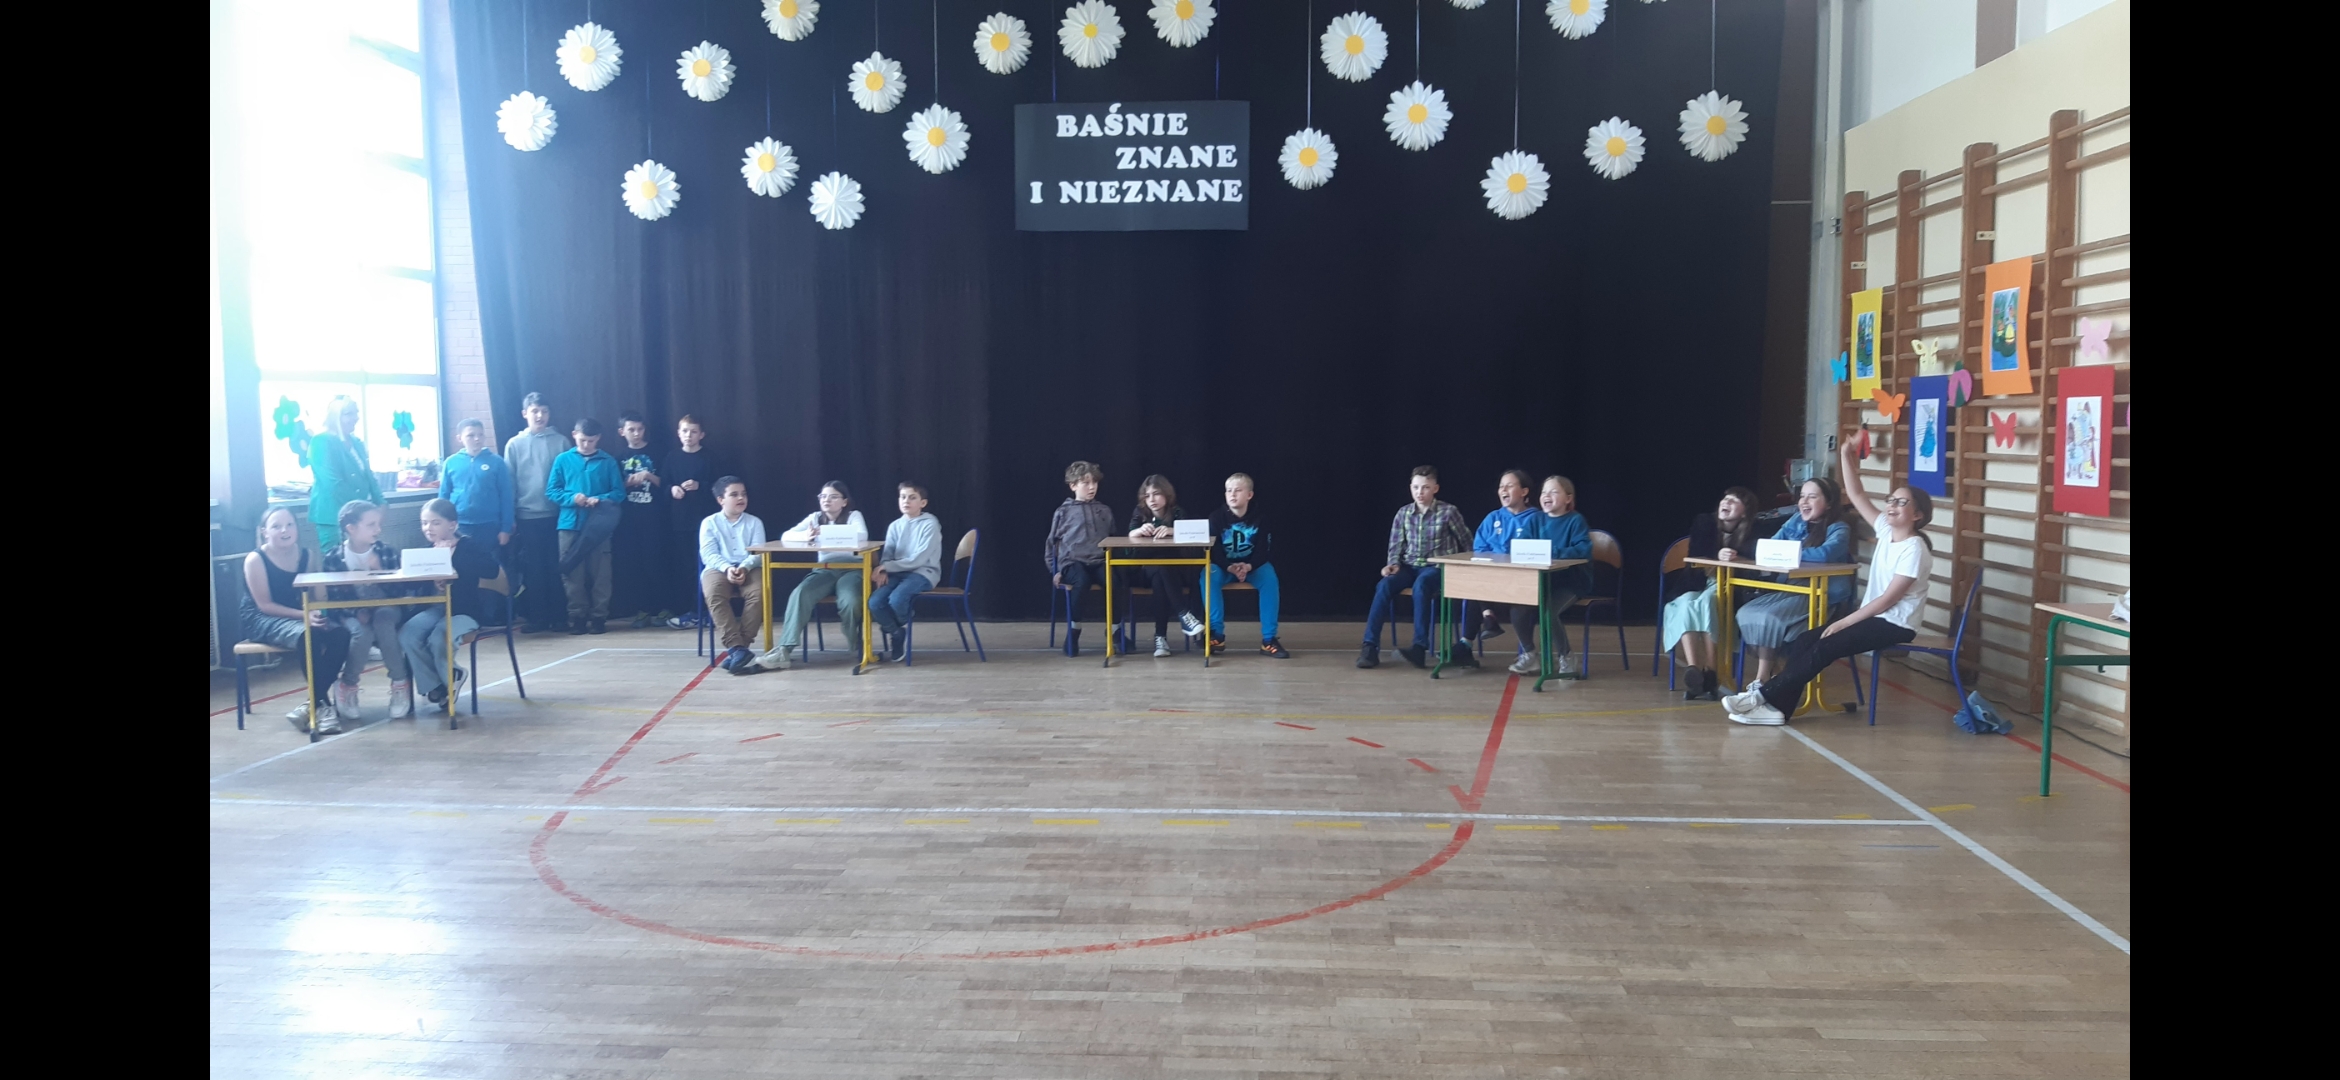 Na sali gimnastycznej, przy stolikach siedzą drużyny biorące udział w zawodach. Z tyłu napis Baśnie znane i nieznane.